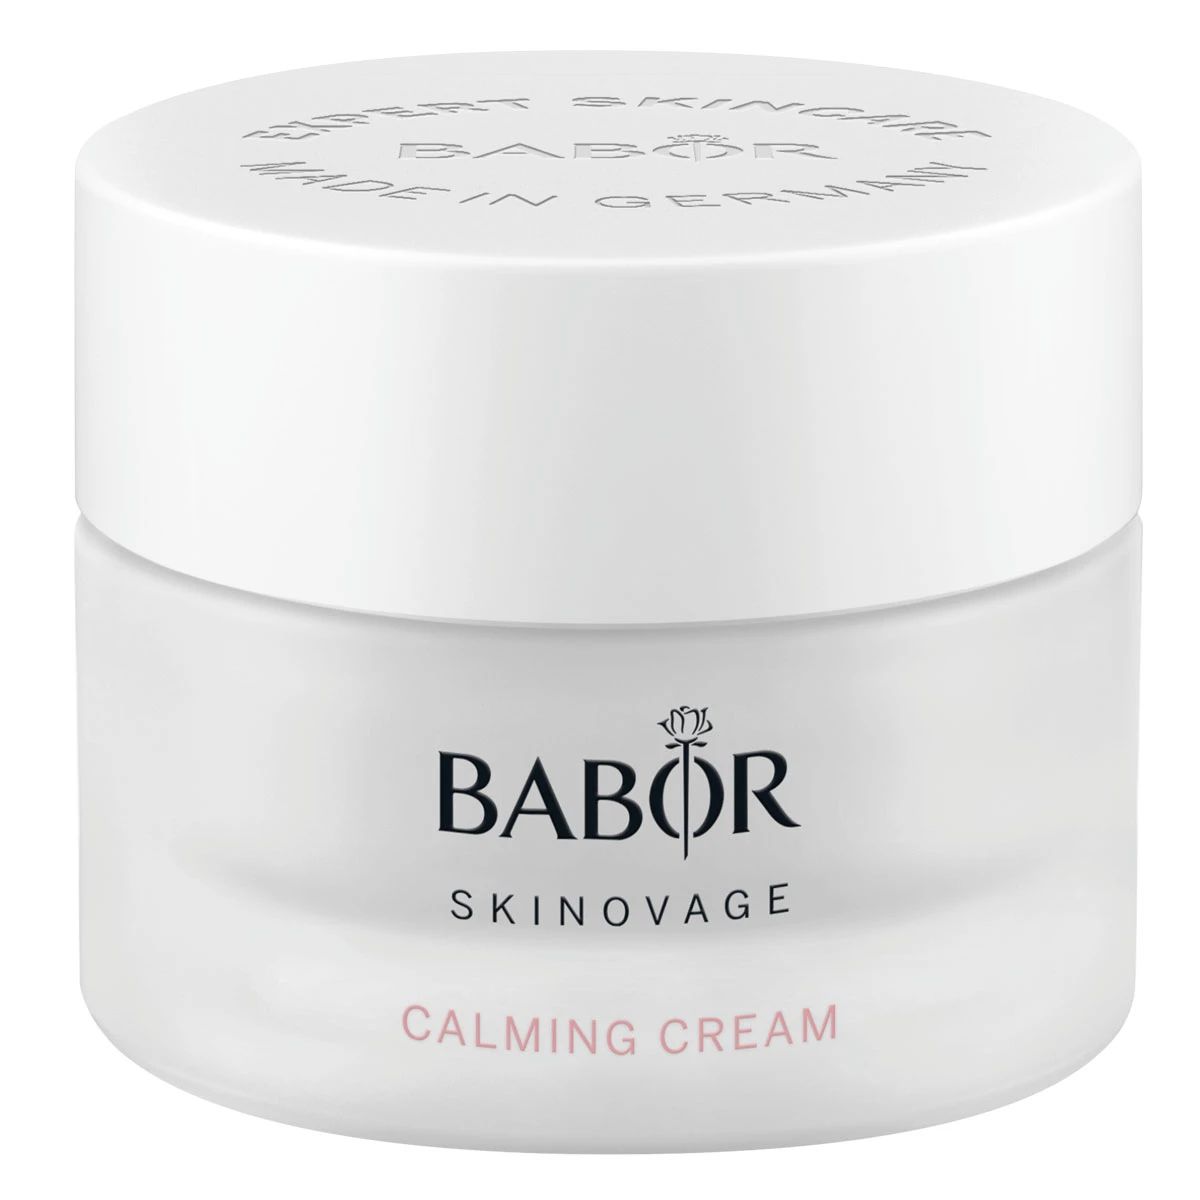 Крем Babor Skinovage для чувствительной кожи 50мл крем экран высокой степени защиты sunscreen spf 50 kt18032 50 мл